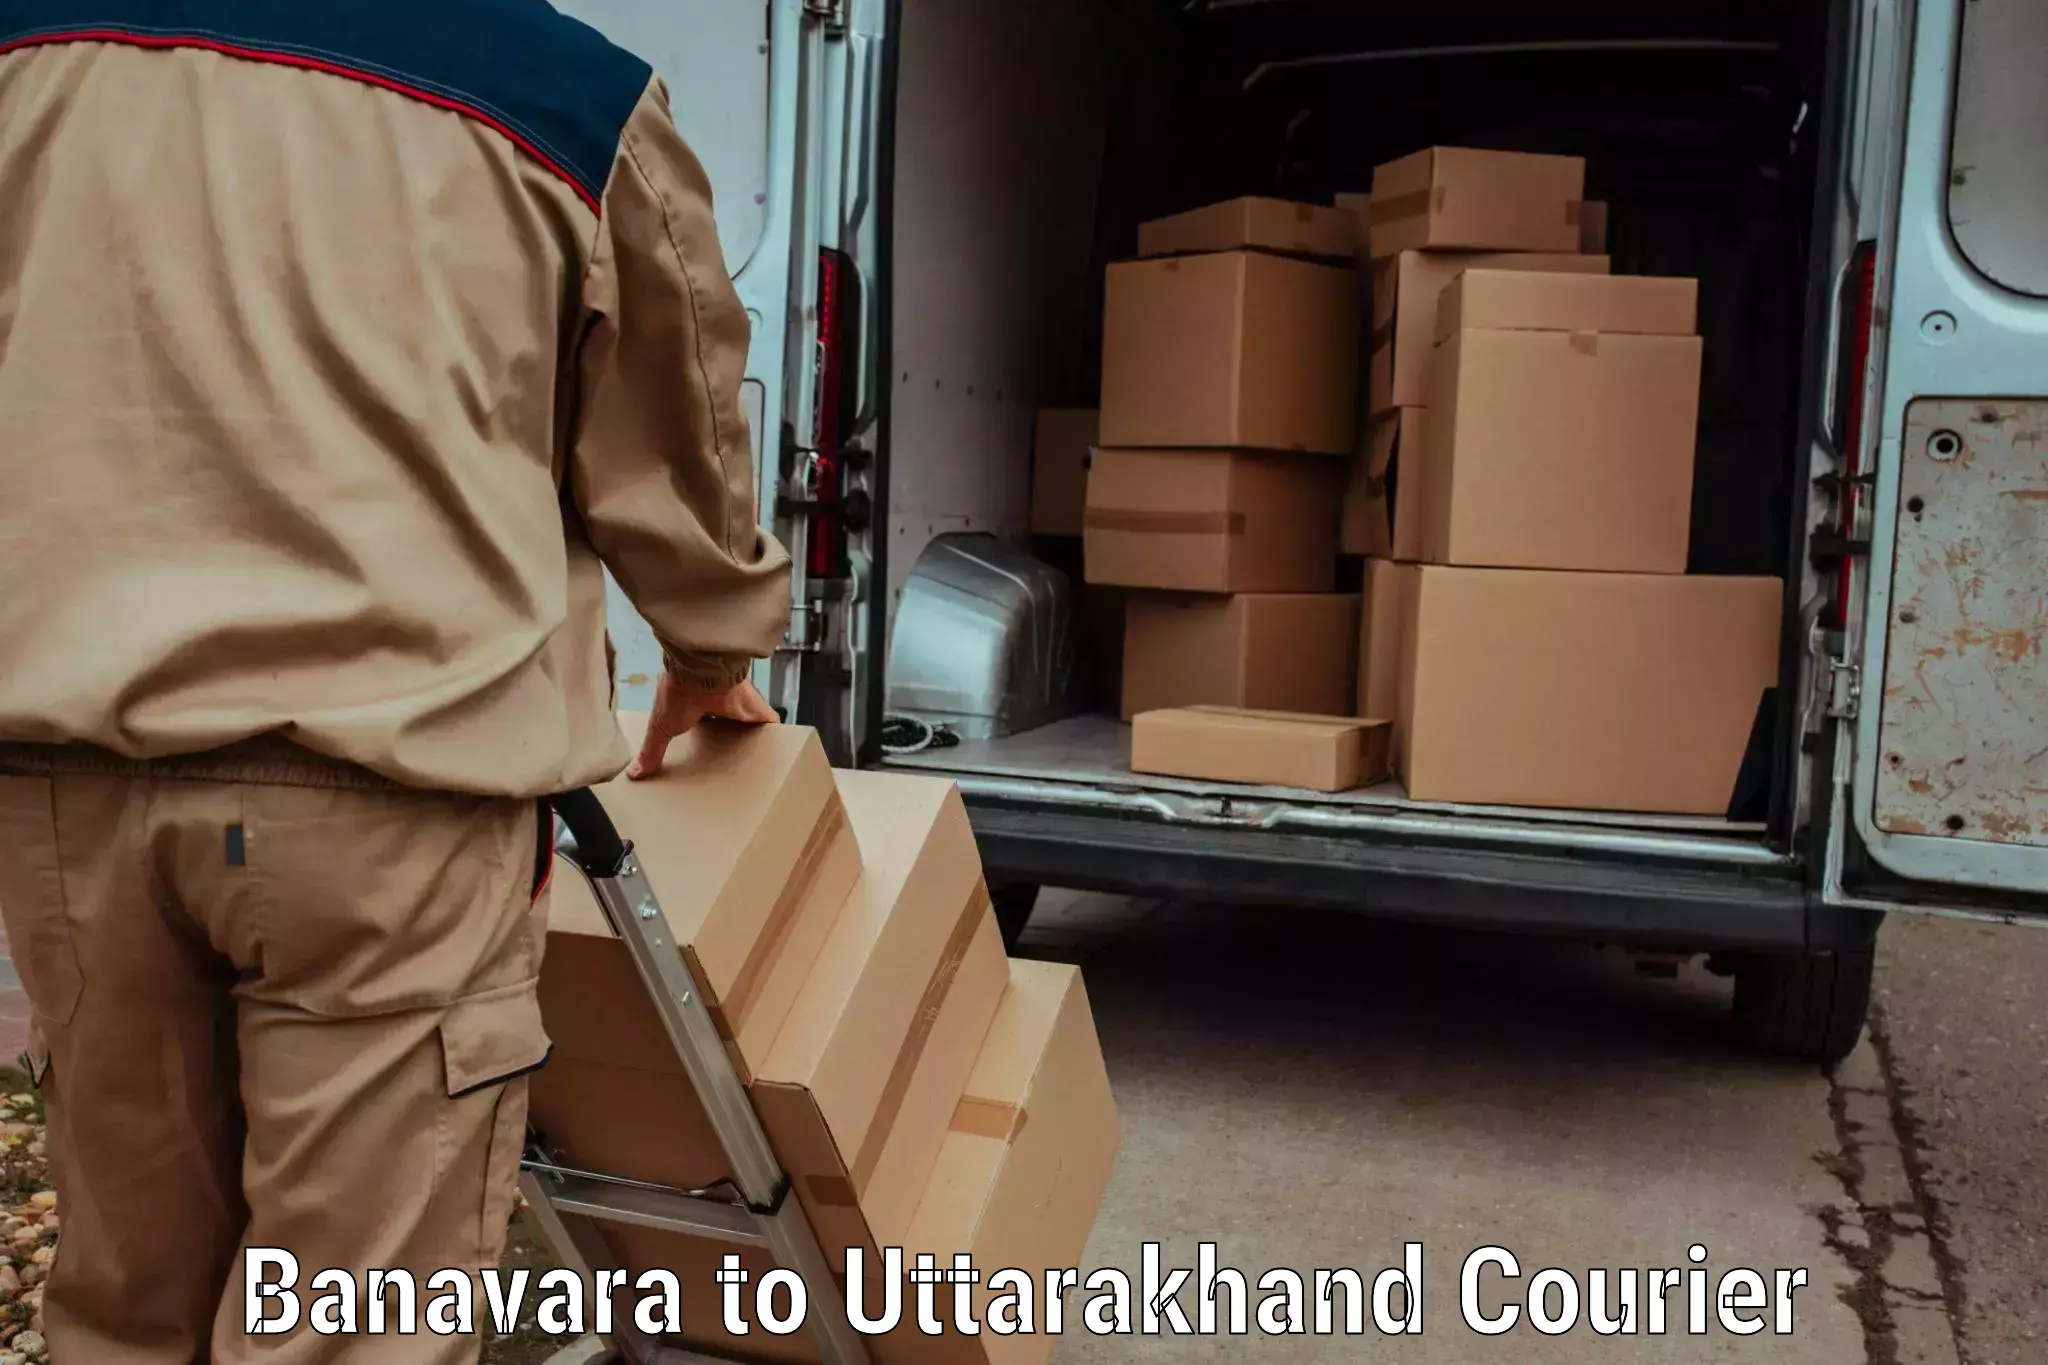 Premium courier solutions Banavara to Dehradun